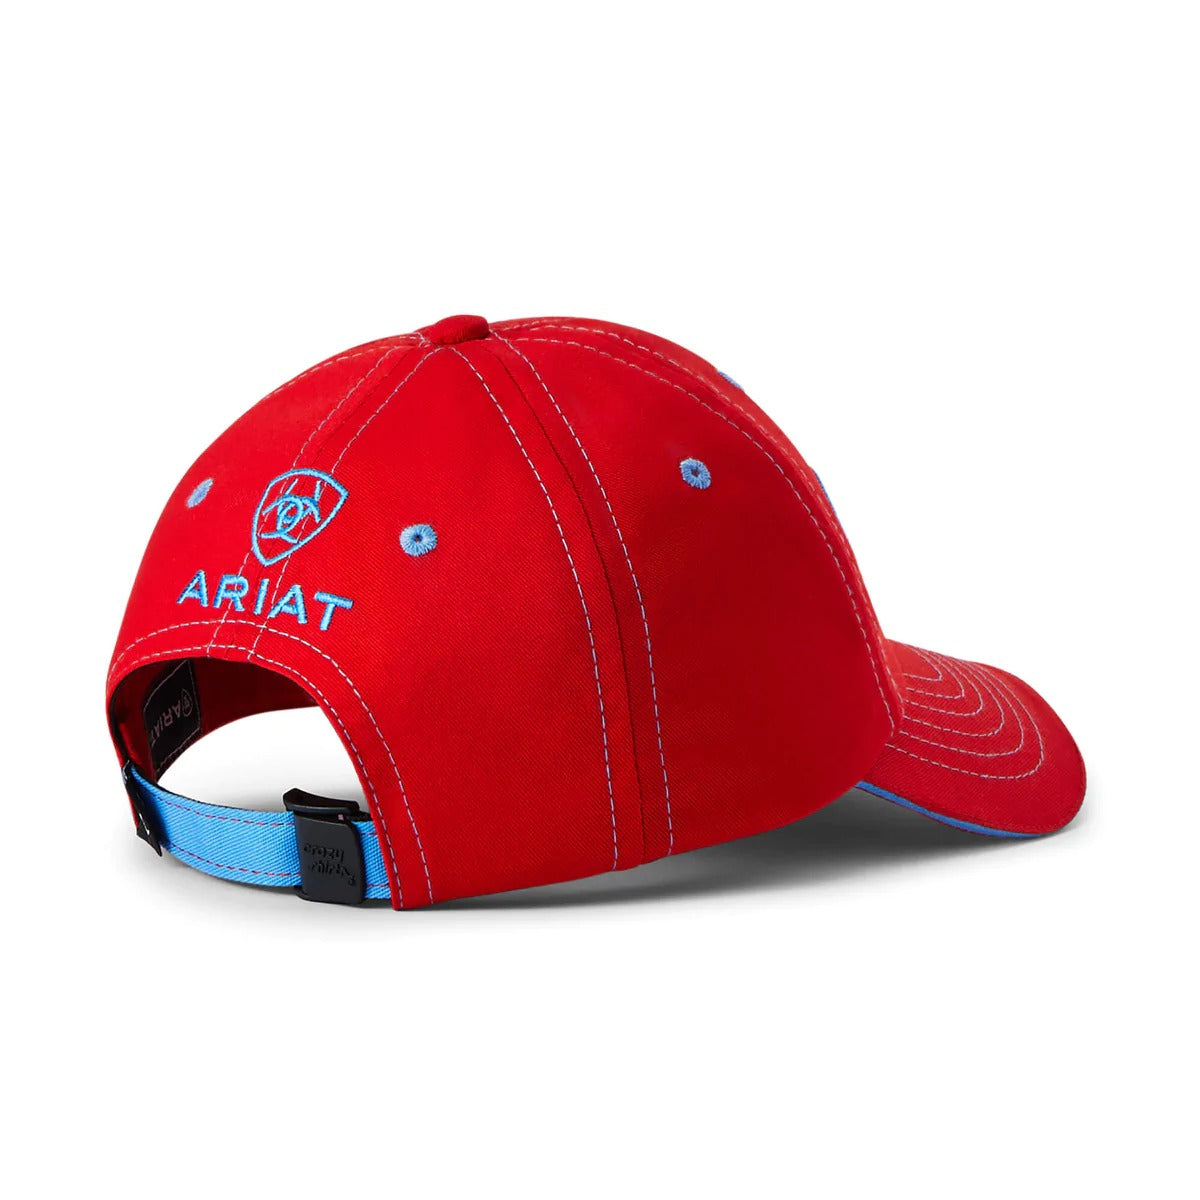 Ariat Team II Cap